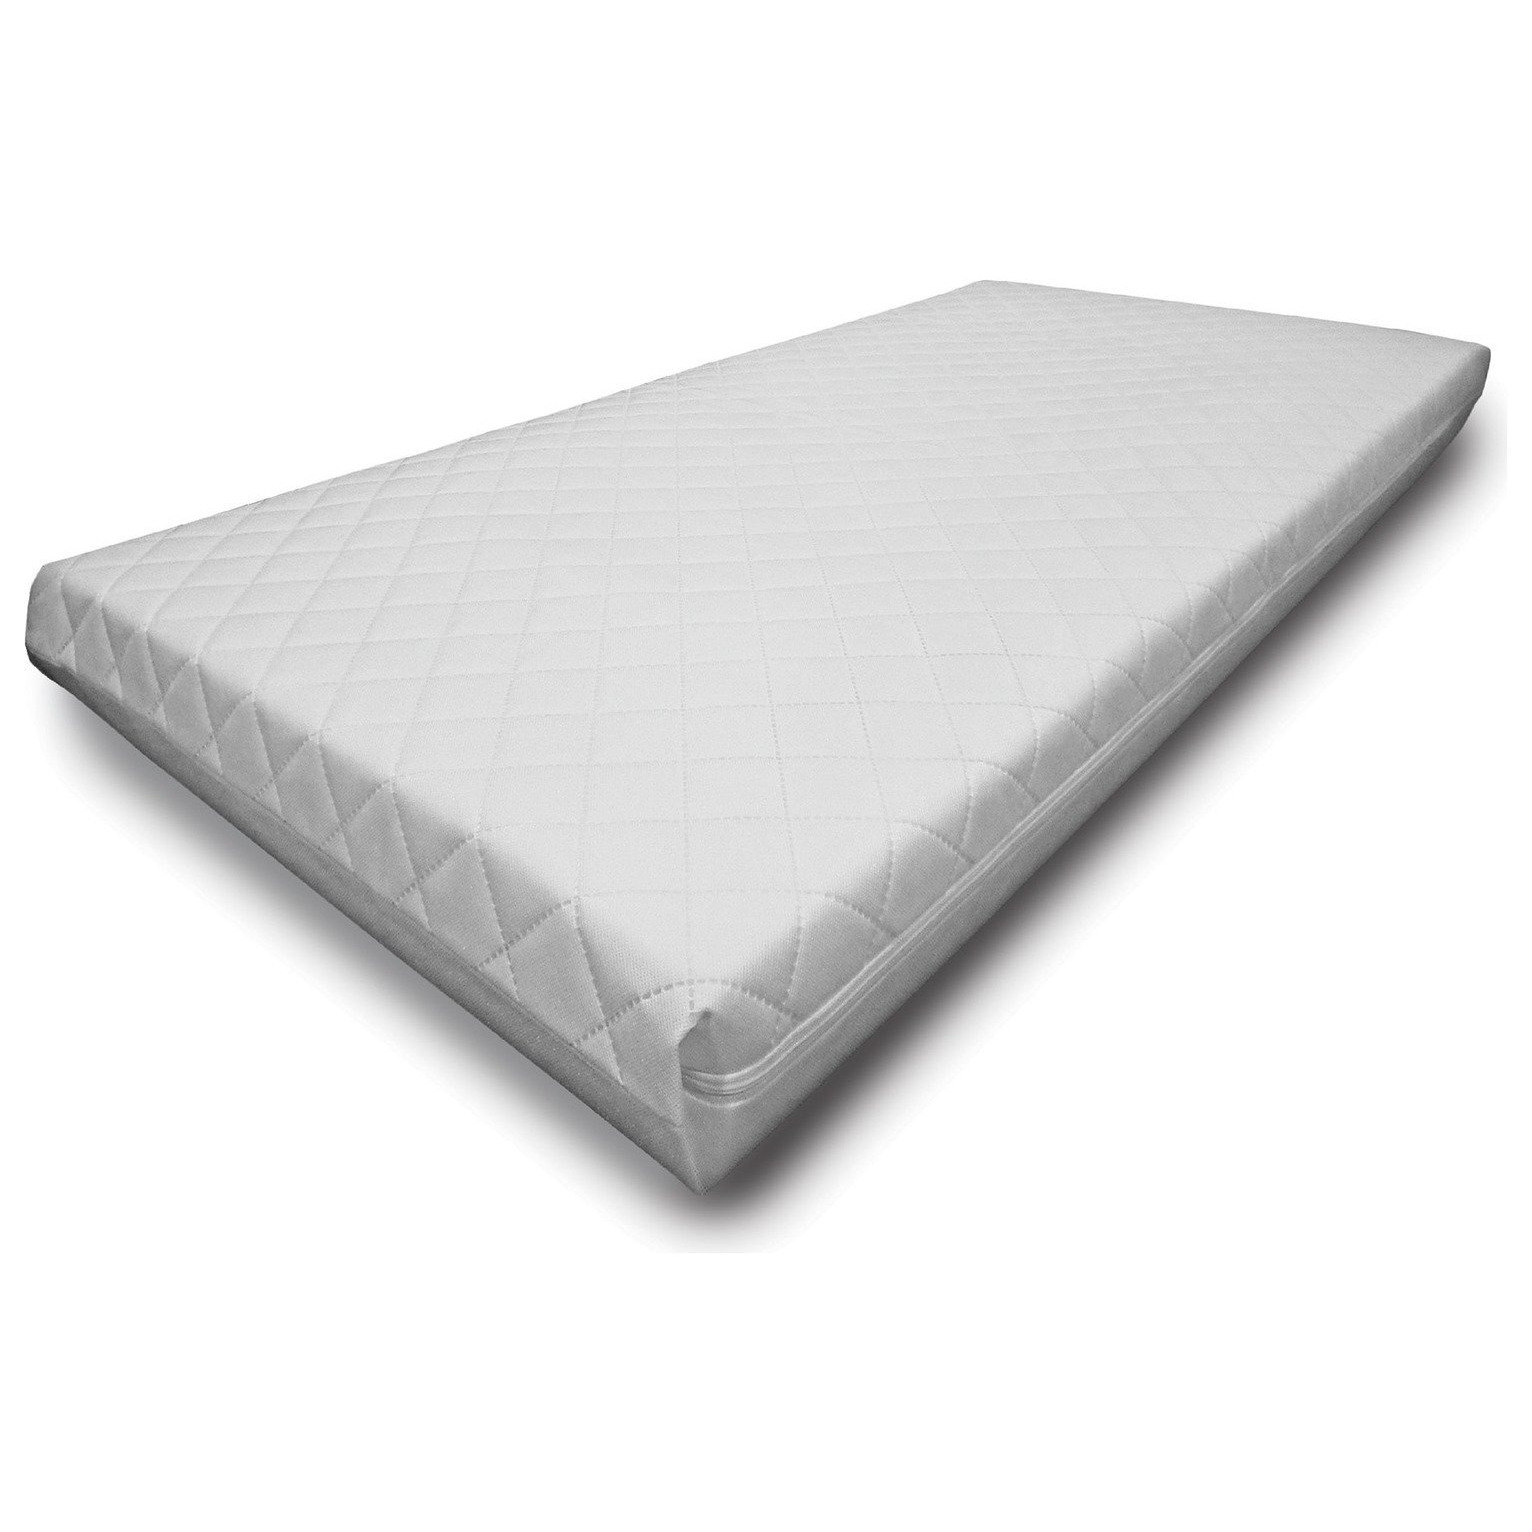 Cuggl 140 x 70cm Pocket Sprung Cot Bed Mattress - image 1